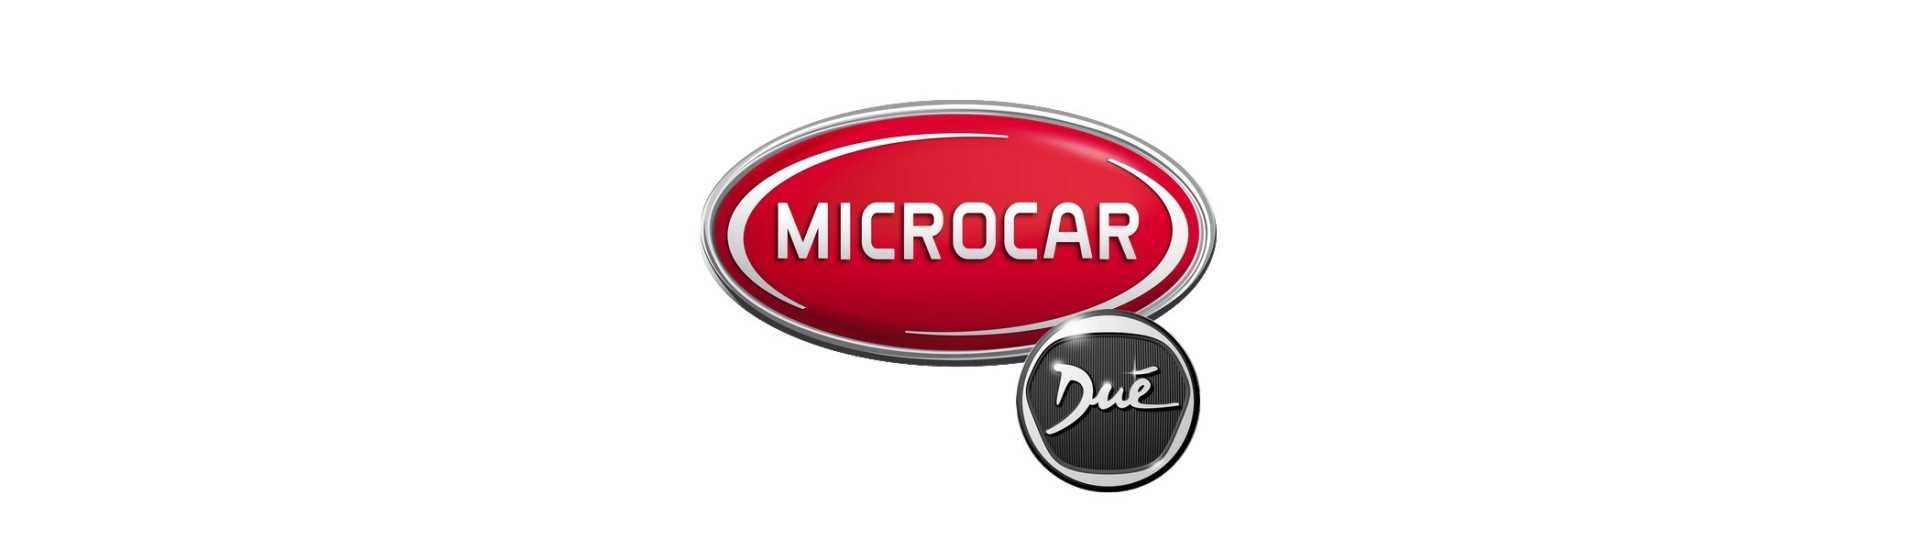 Bloque silencioso al mejor precio para coche sin licencia Microcar Dué